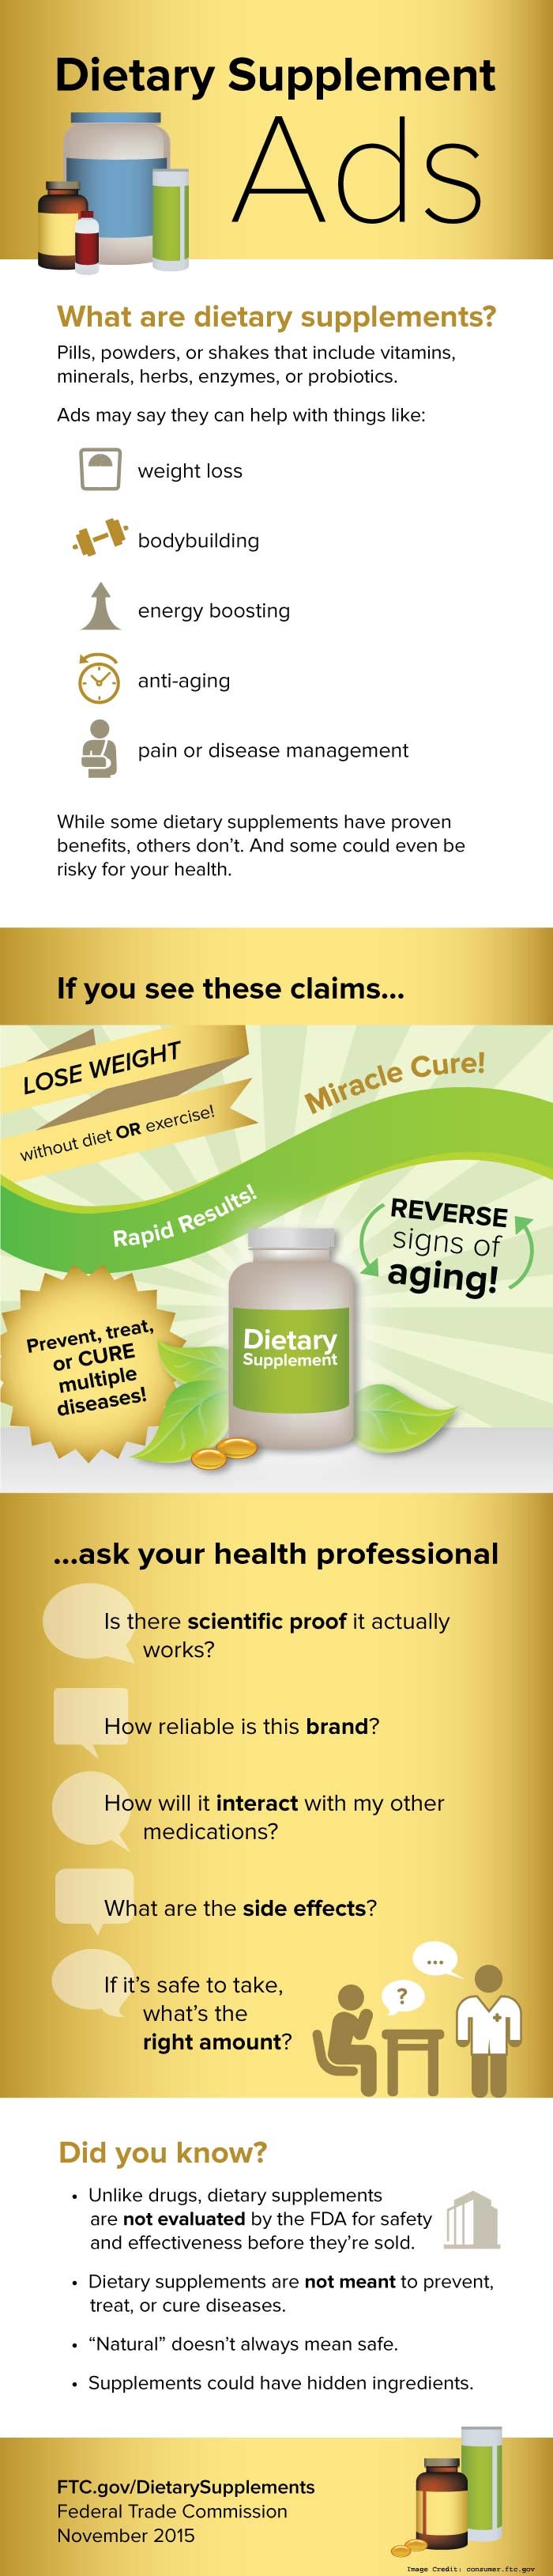 Dietary Supplement info